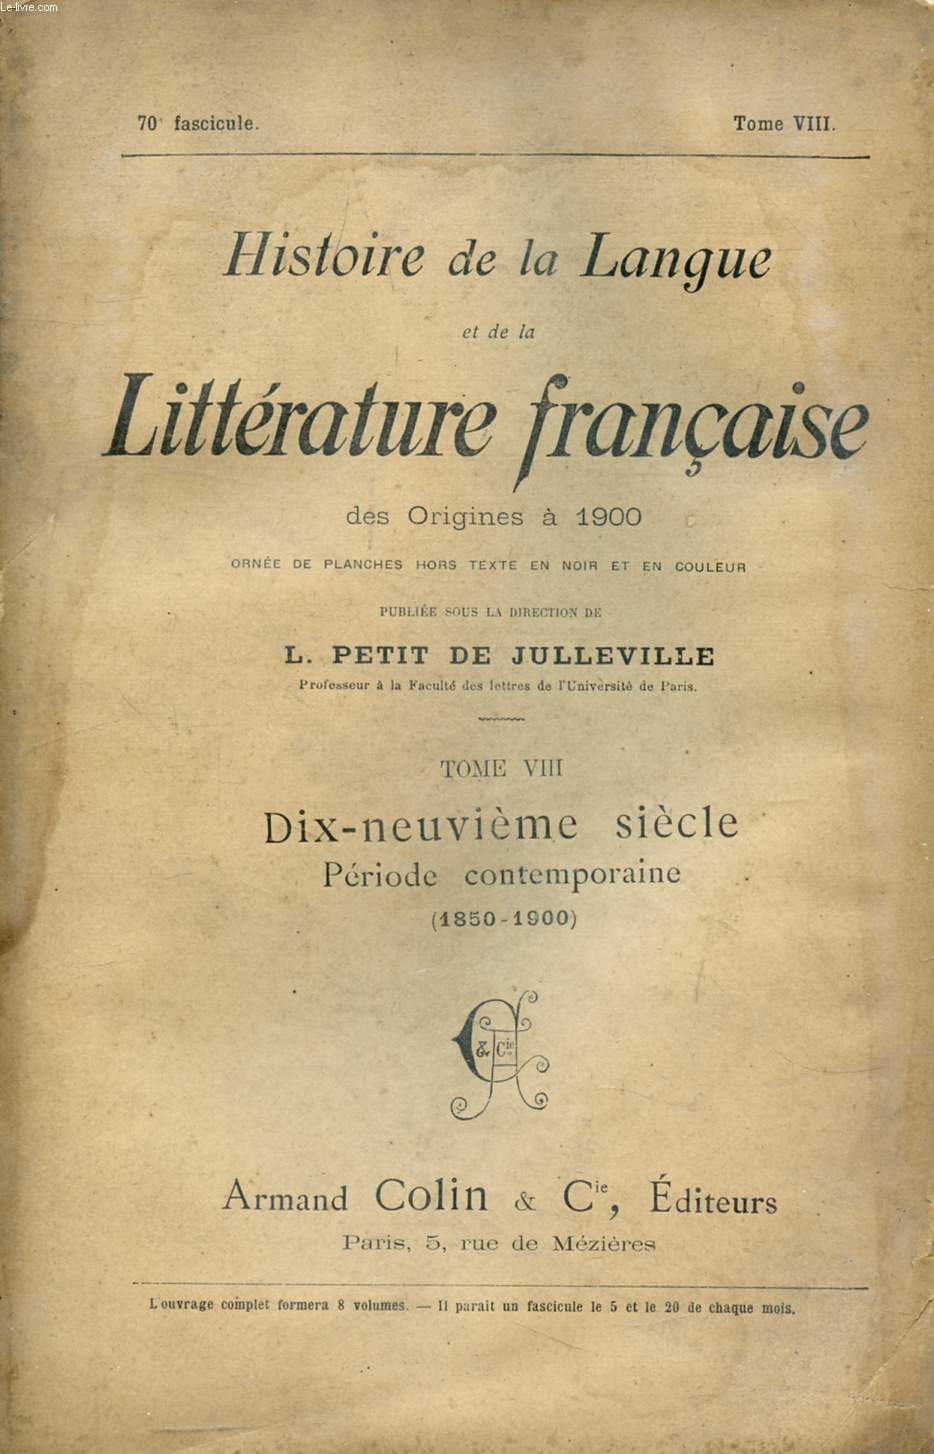 HISTOIRE DE LA LANGUE ET DE LA LITTERATURE FRANCAISE DES ORIGINES A 1900, 70e FASCICULE, TOME VIII, DIX-NEUVIEME SIECLE, PERIODE CONTEMPORAINE (1850-1900)